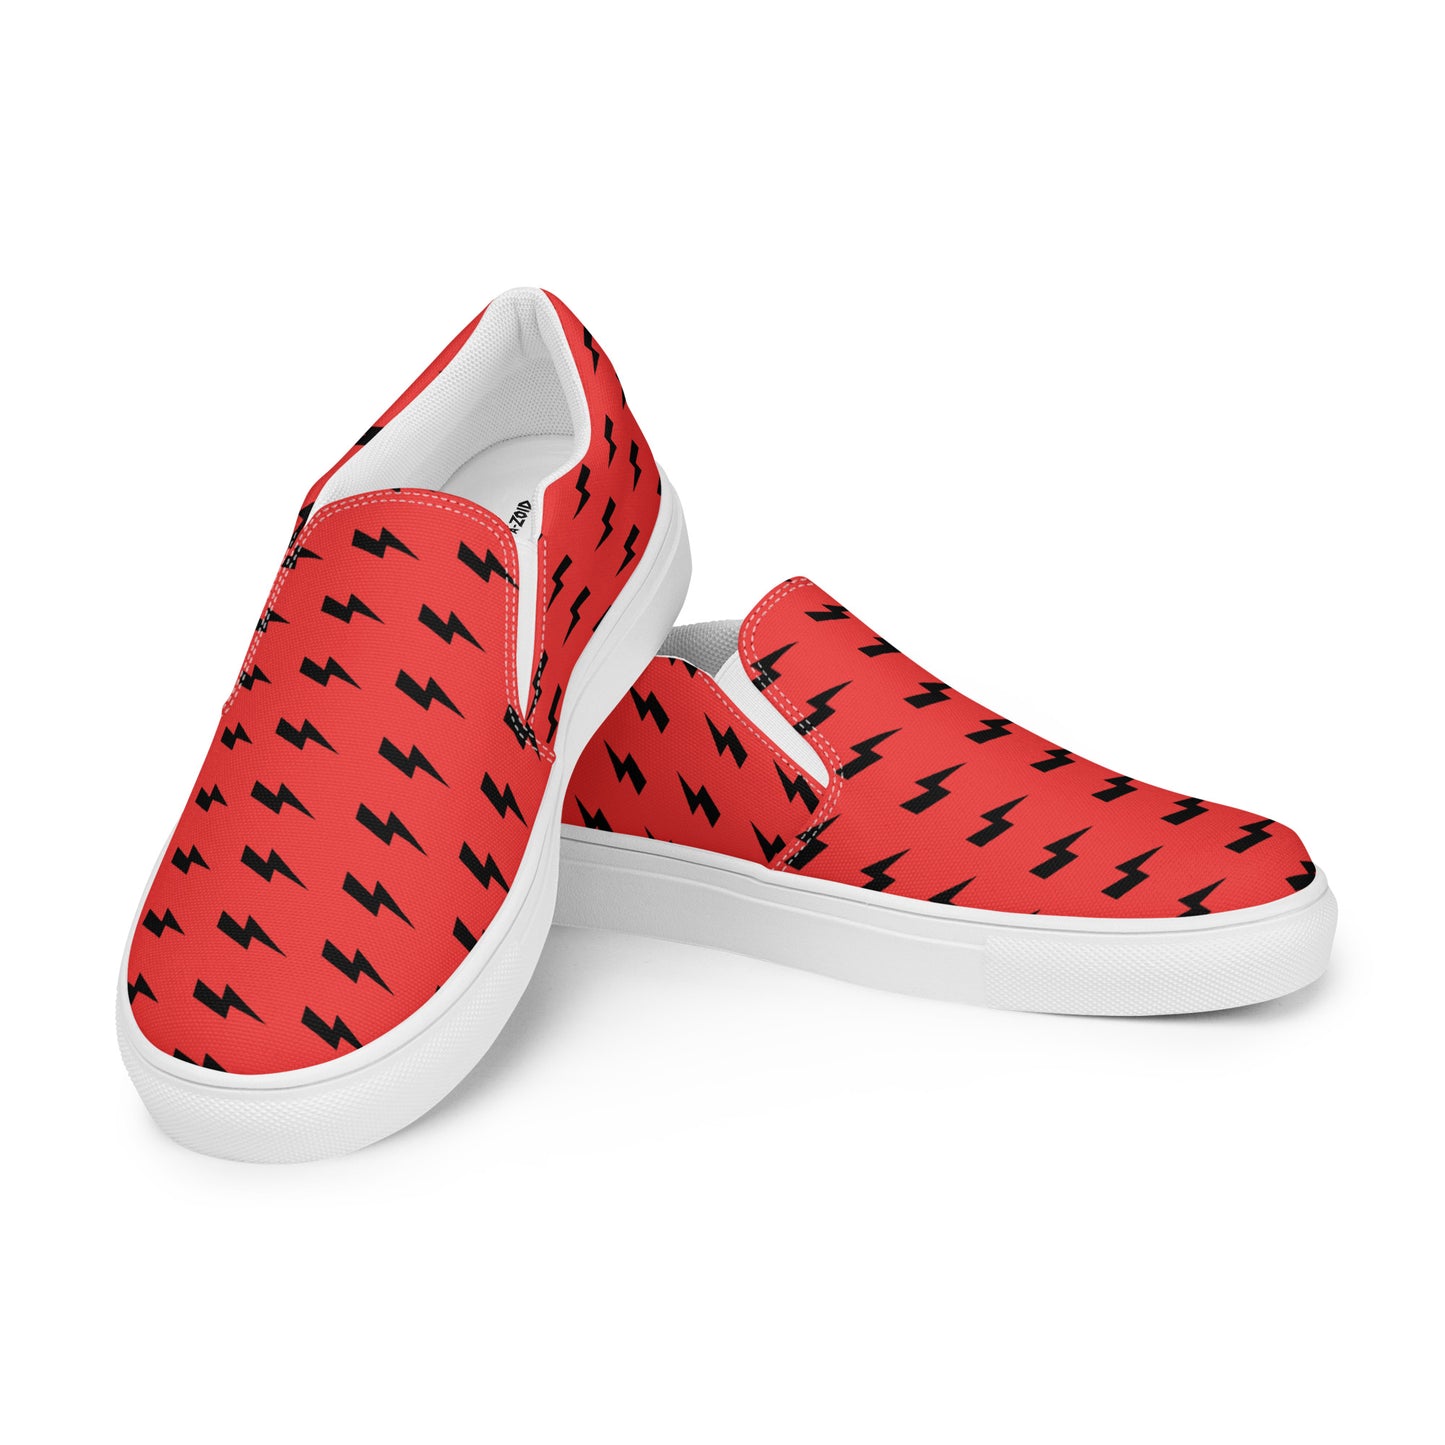 "Black Lightning" RED - Women’s slip-on shoes